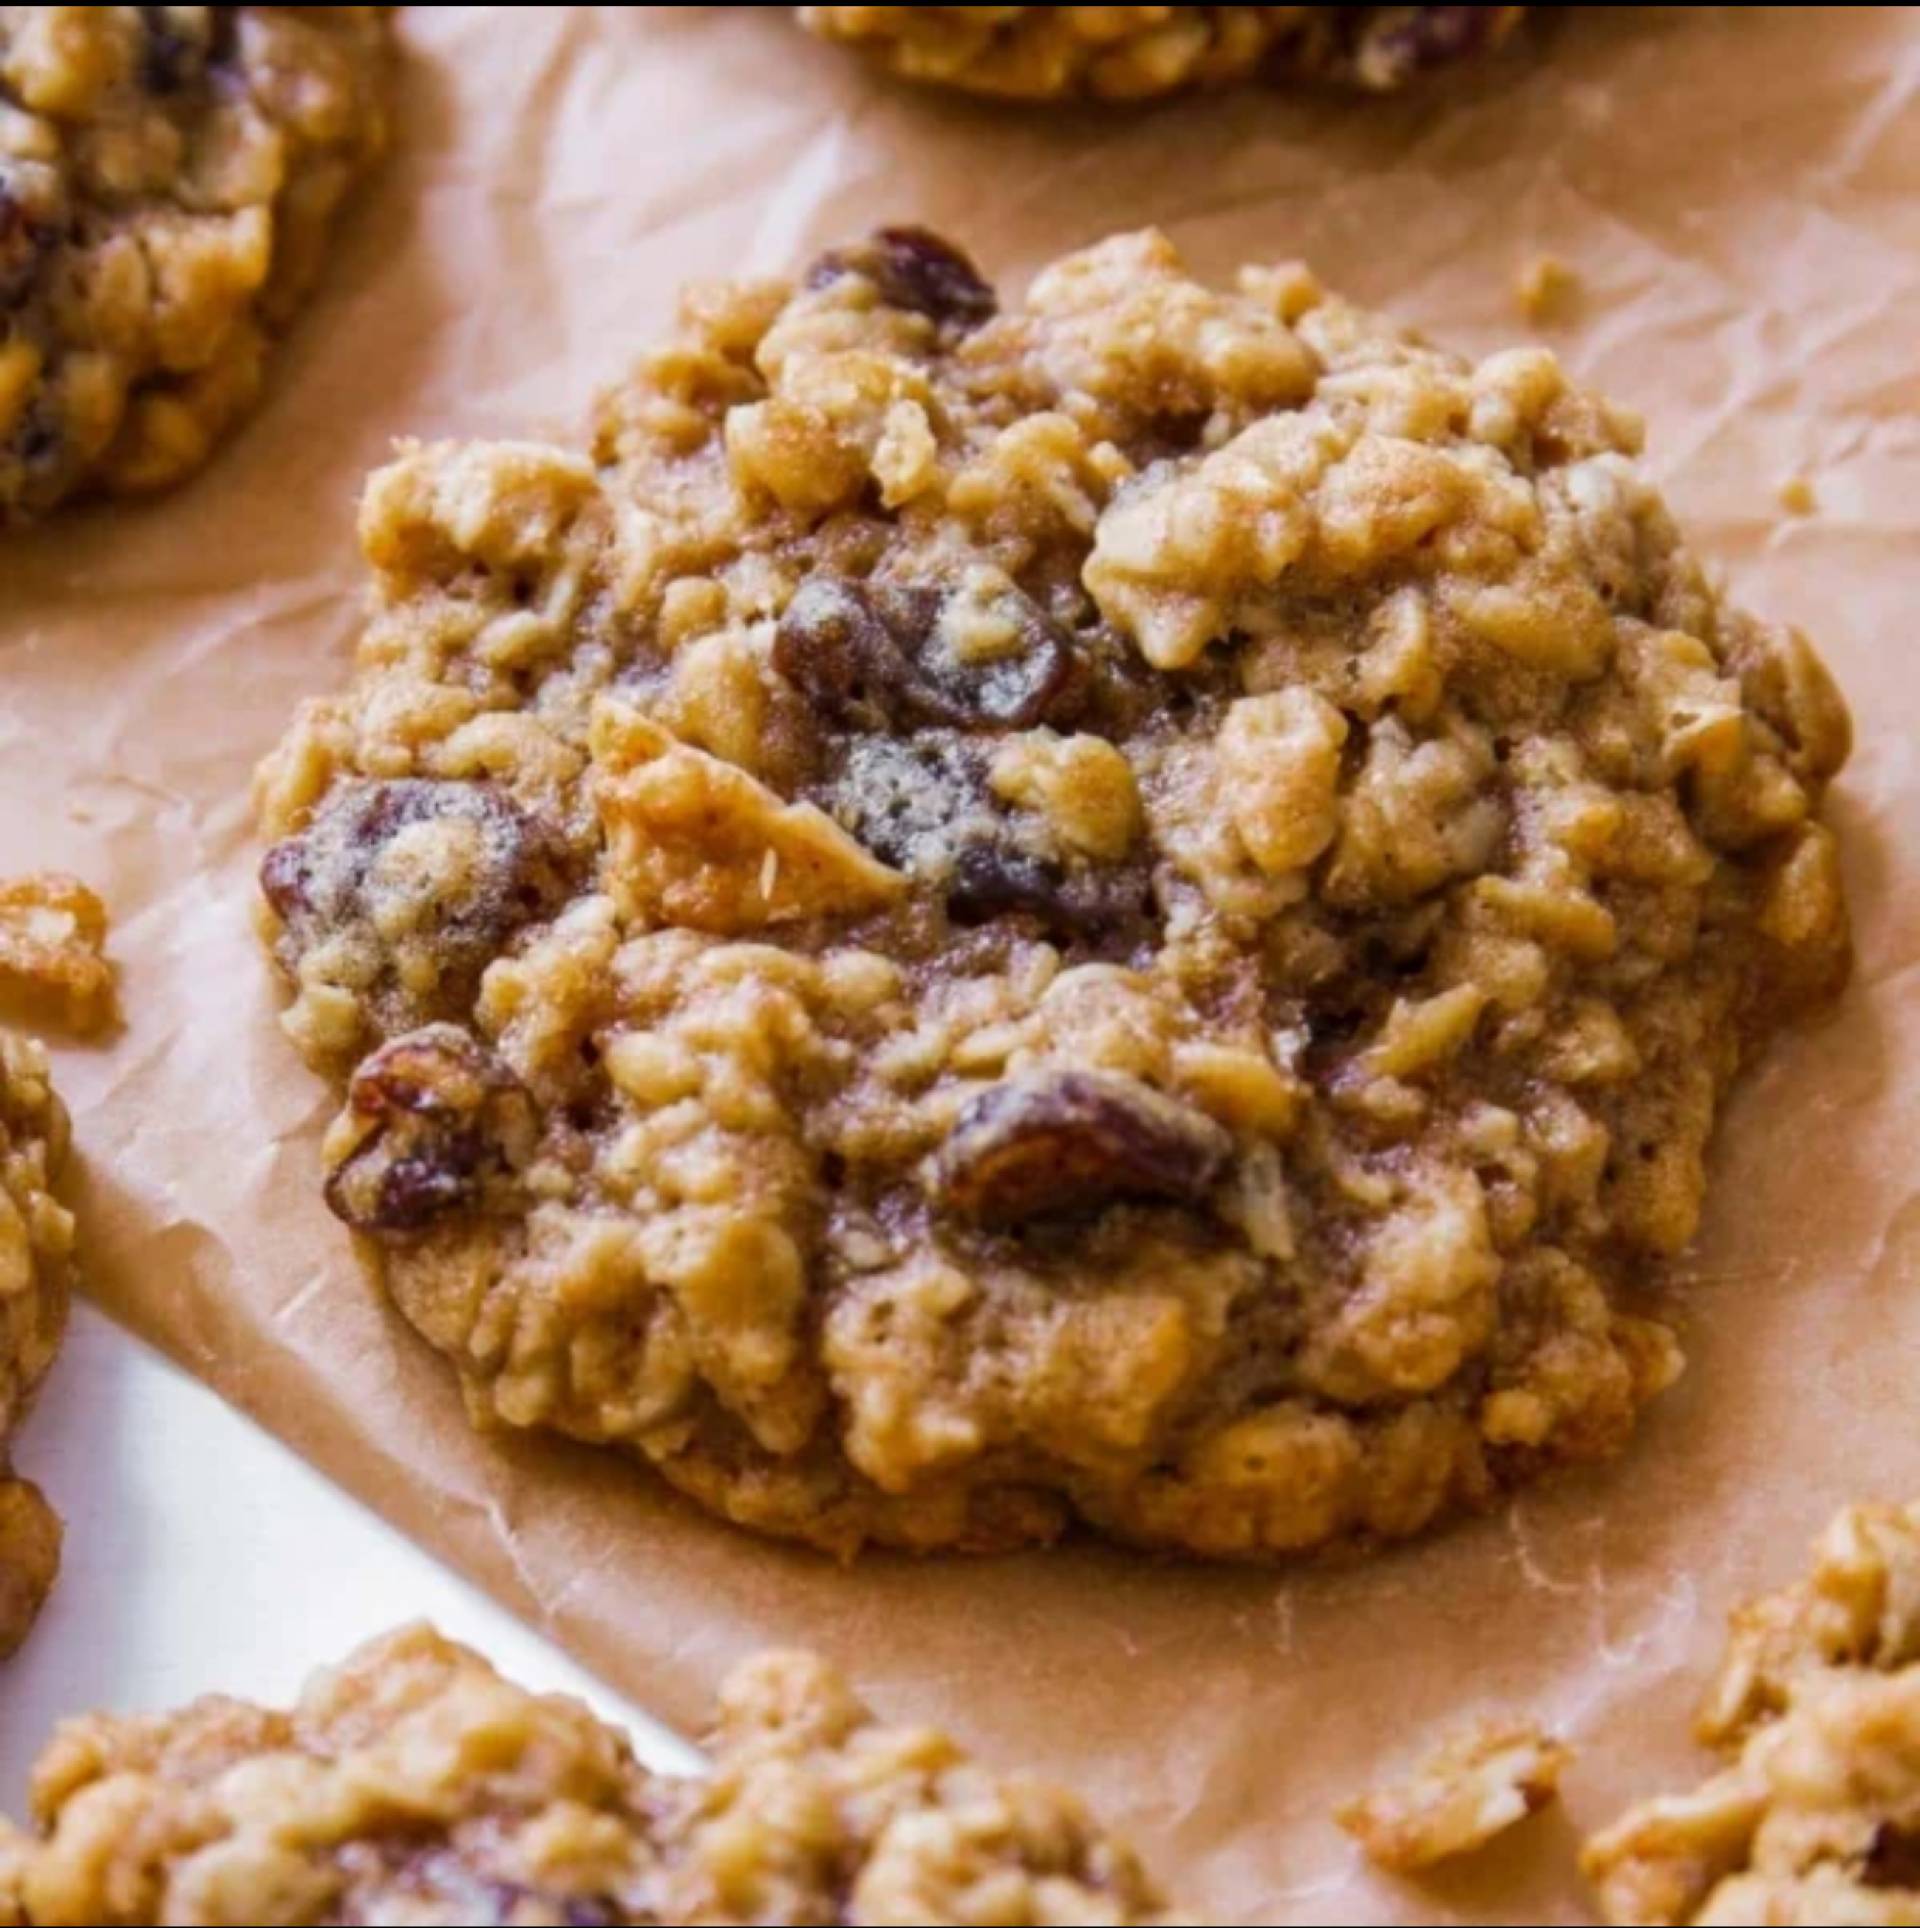 Oatmeal Raisin Cookies dozen (no nuts)